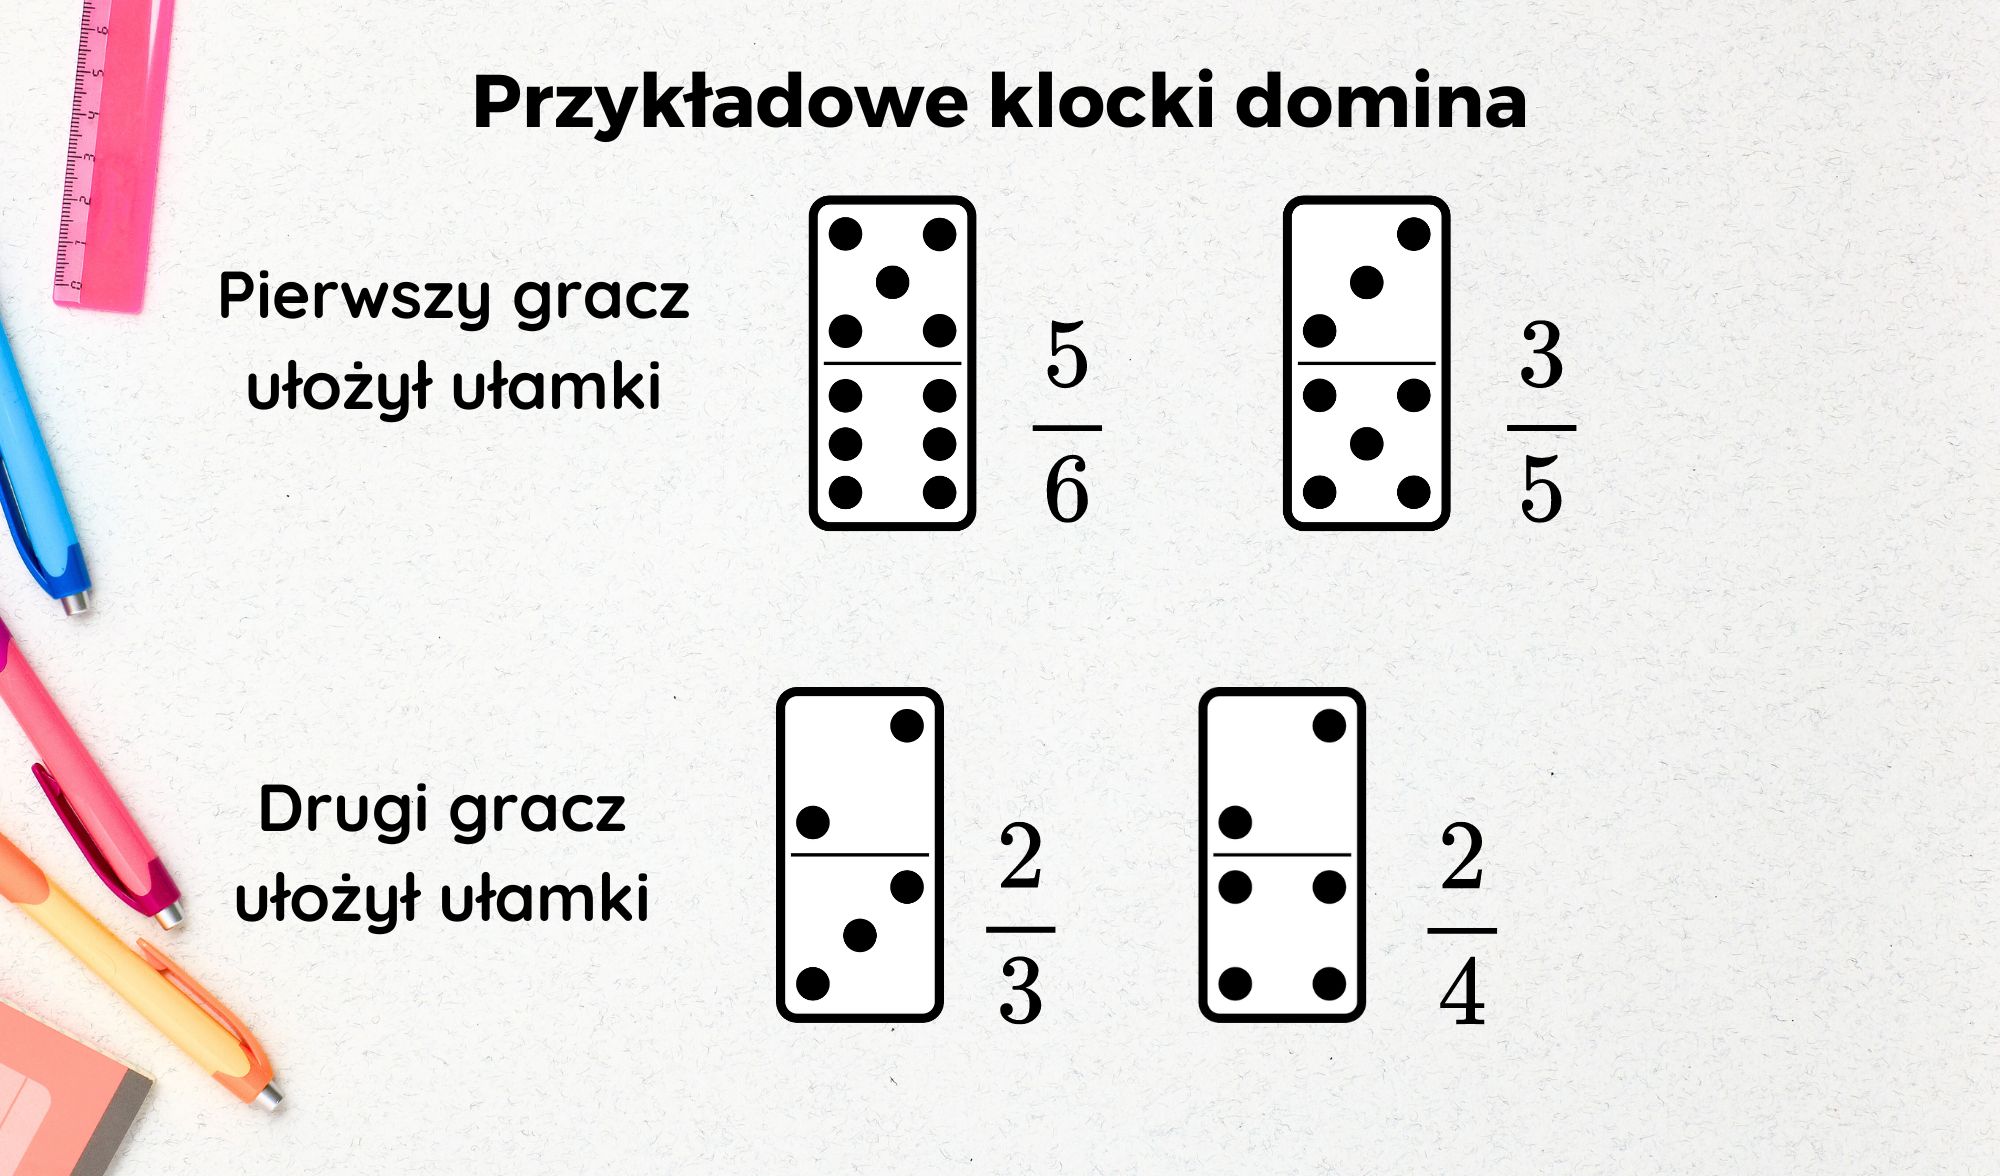 gra w domino nauka matematyki ulamki zwykle mat4fun -  10 gier matematycznych z domino, które uczą i bawią!